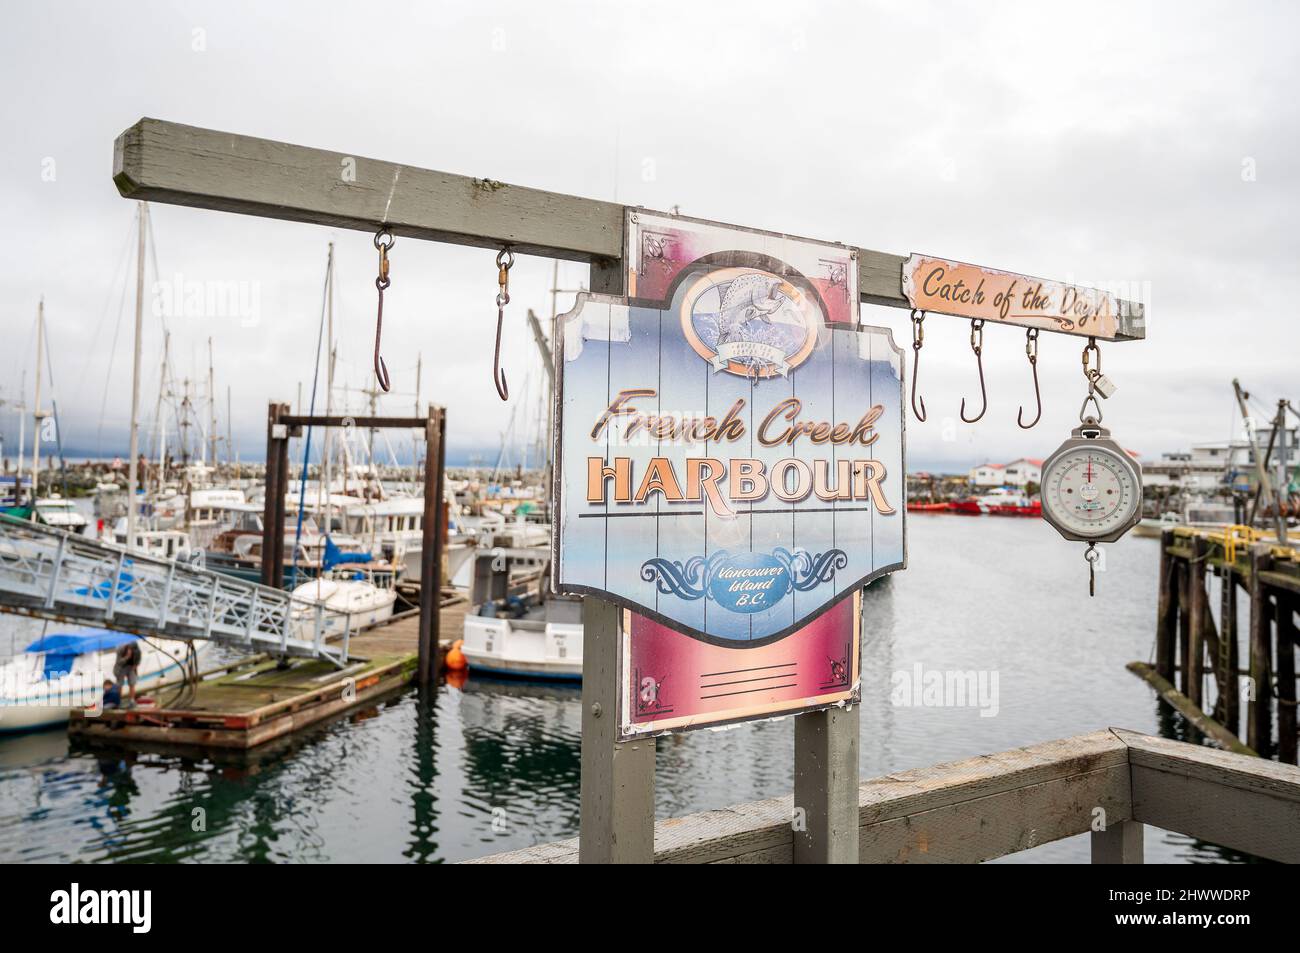 Des bateaux de pêche commerciaux ont été amarrés au port de French Creek, le long de la route de l'île de Vancouver, entre Nanaimo et Courtney, C.-B., Canada. Banque D'Images